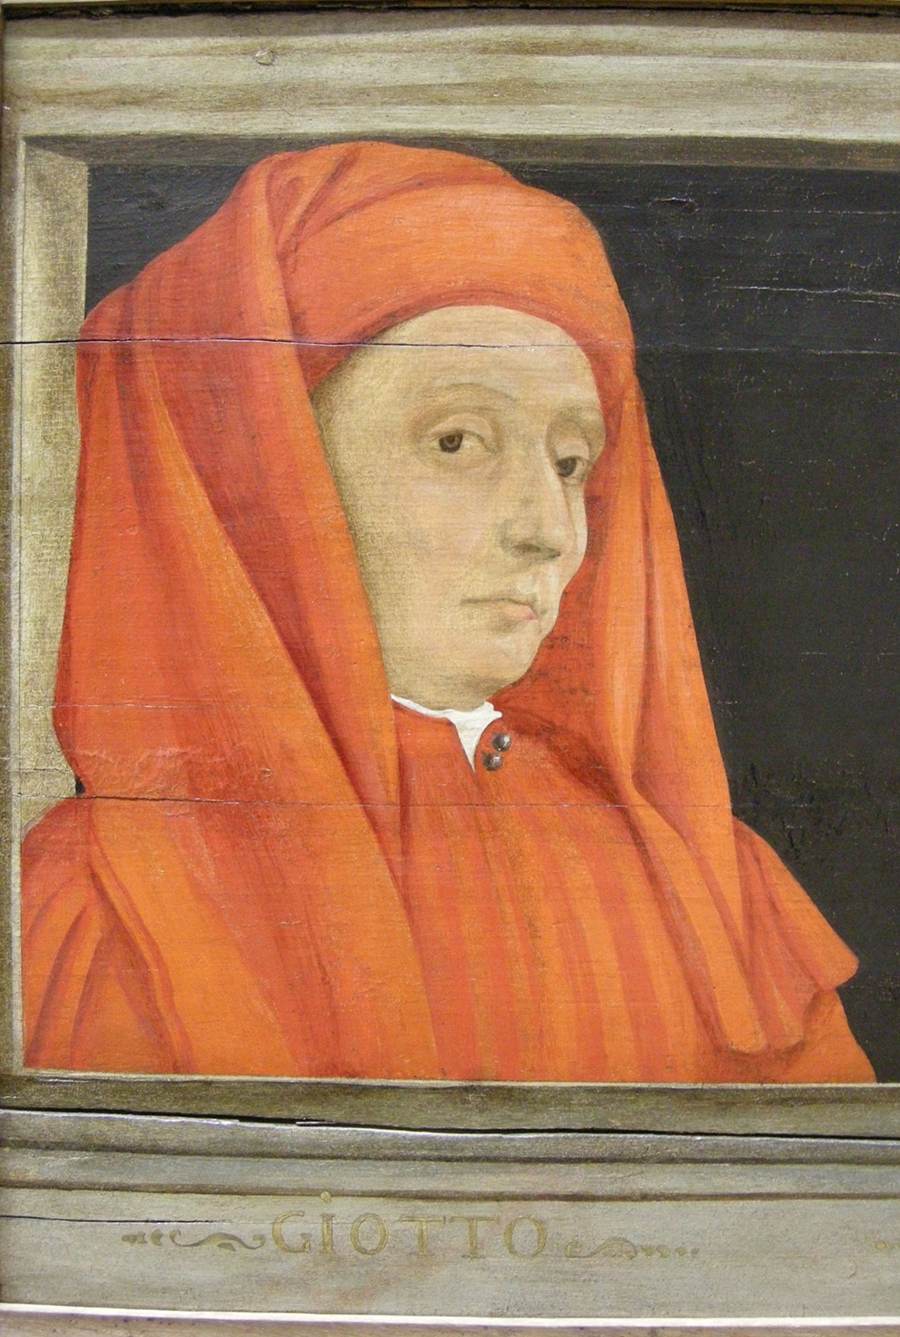 Giotto-1267-1337 (77).JPG